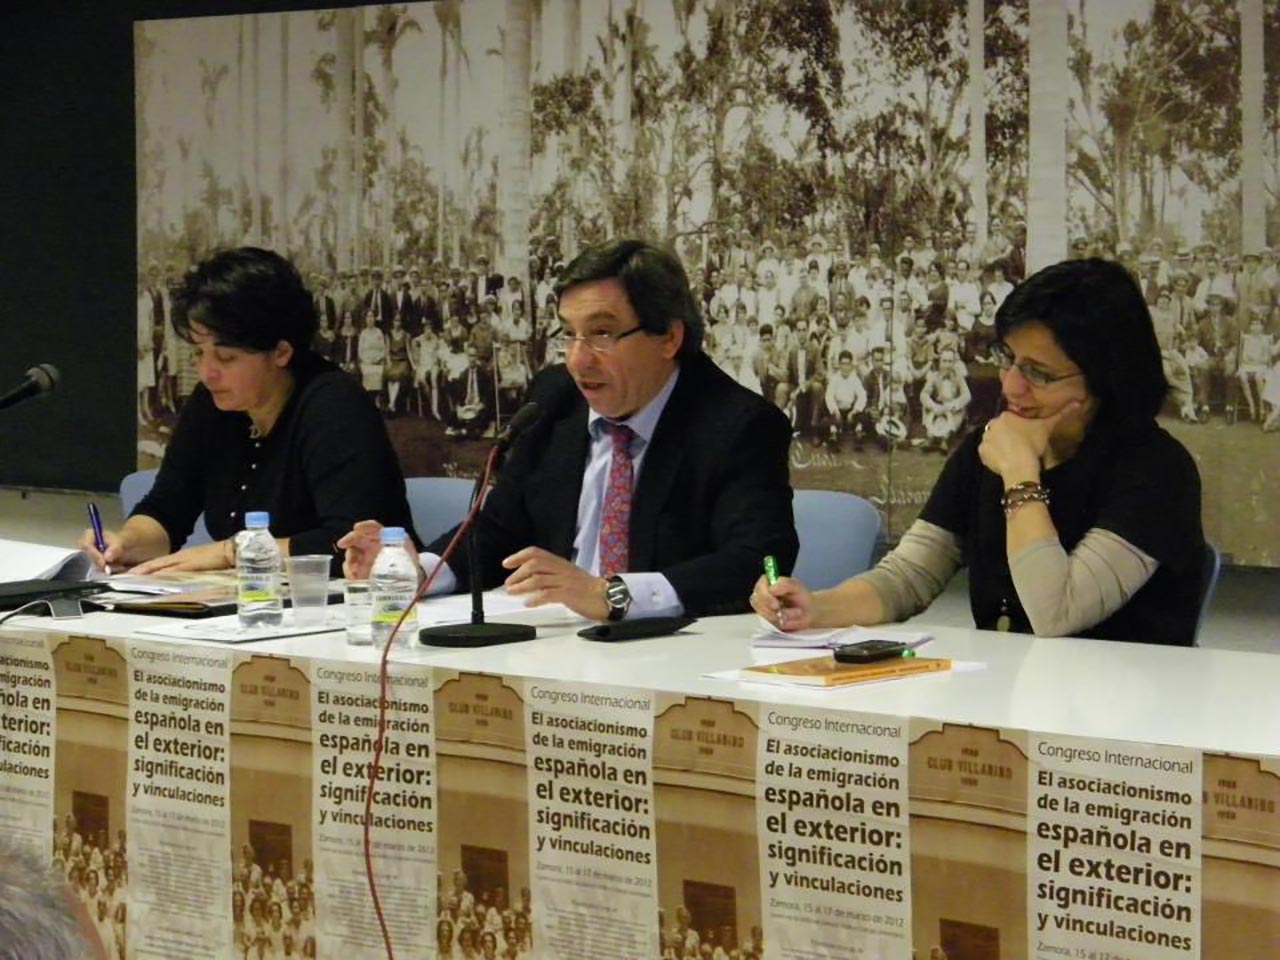 Congreso Internacional El asociacionismo en la emigración exterior. Zamora, 2012